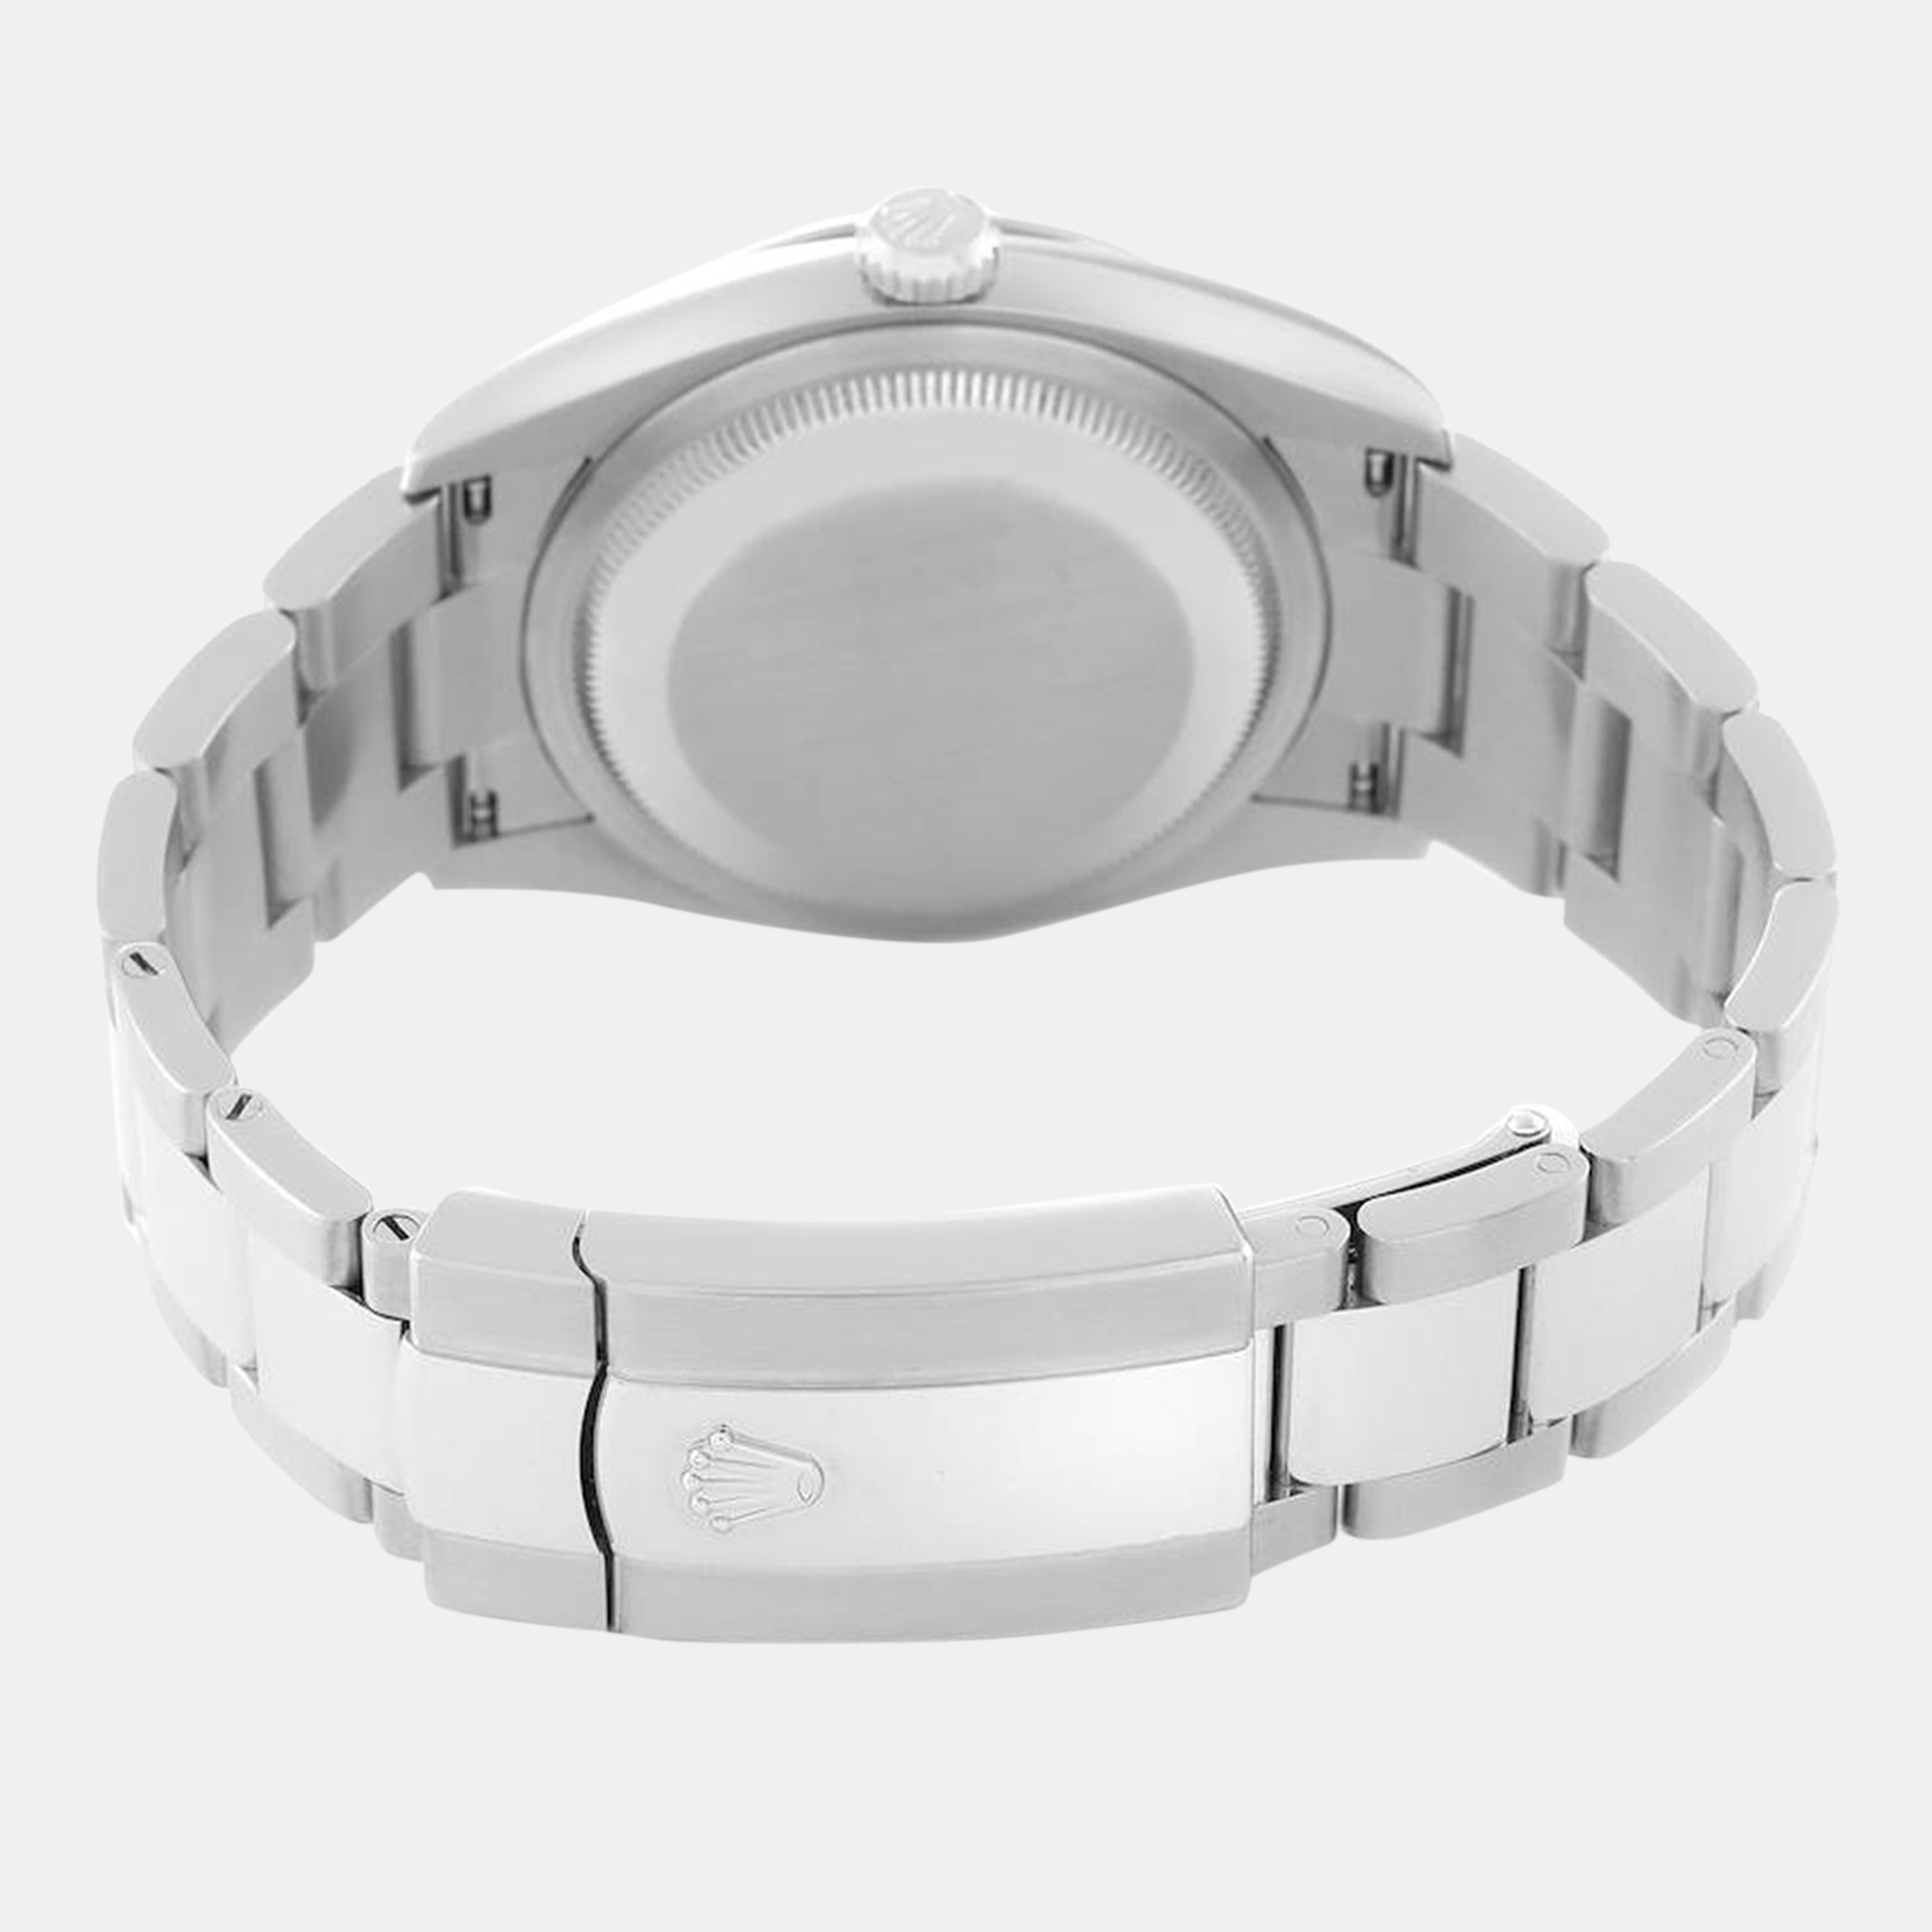 Rolex Datejust Steel White Gold Aubergine Diamond Dial Men's Watch 126234 36 Mm